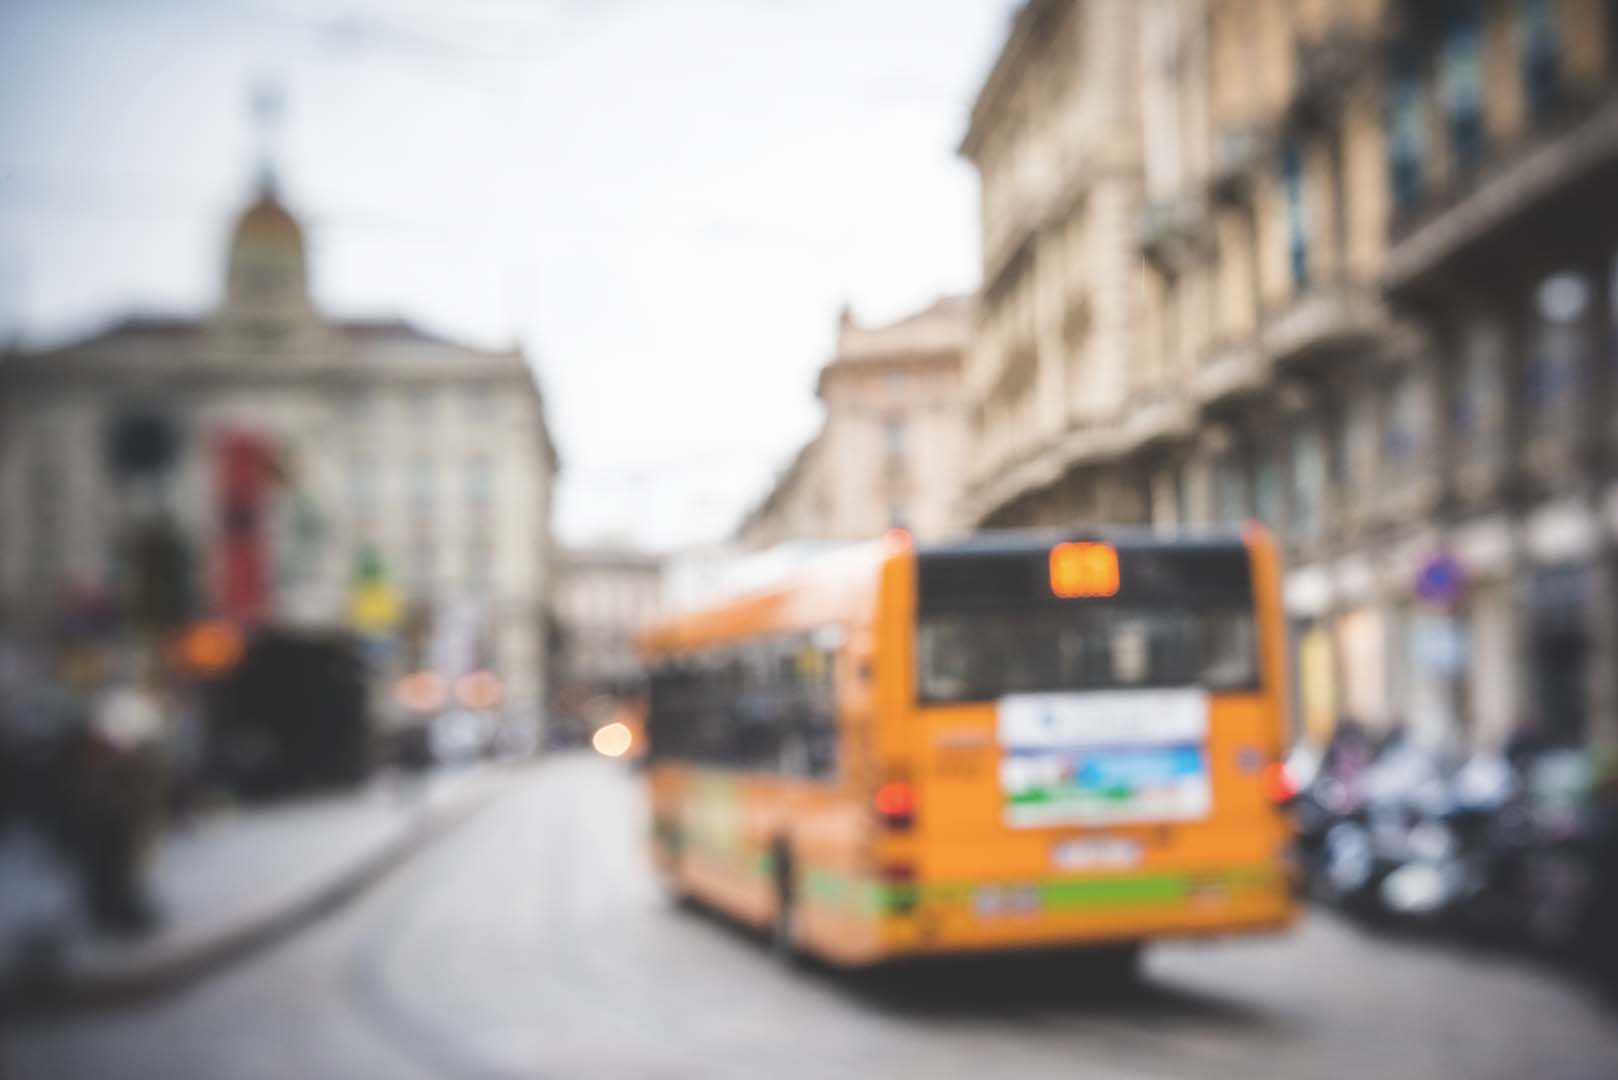 Basilicata: Pittella, salvaguardare posti di lavoro nei trasporti